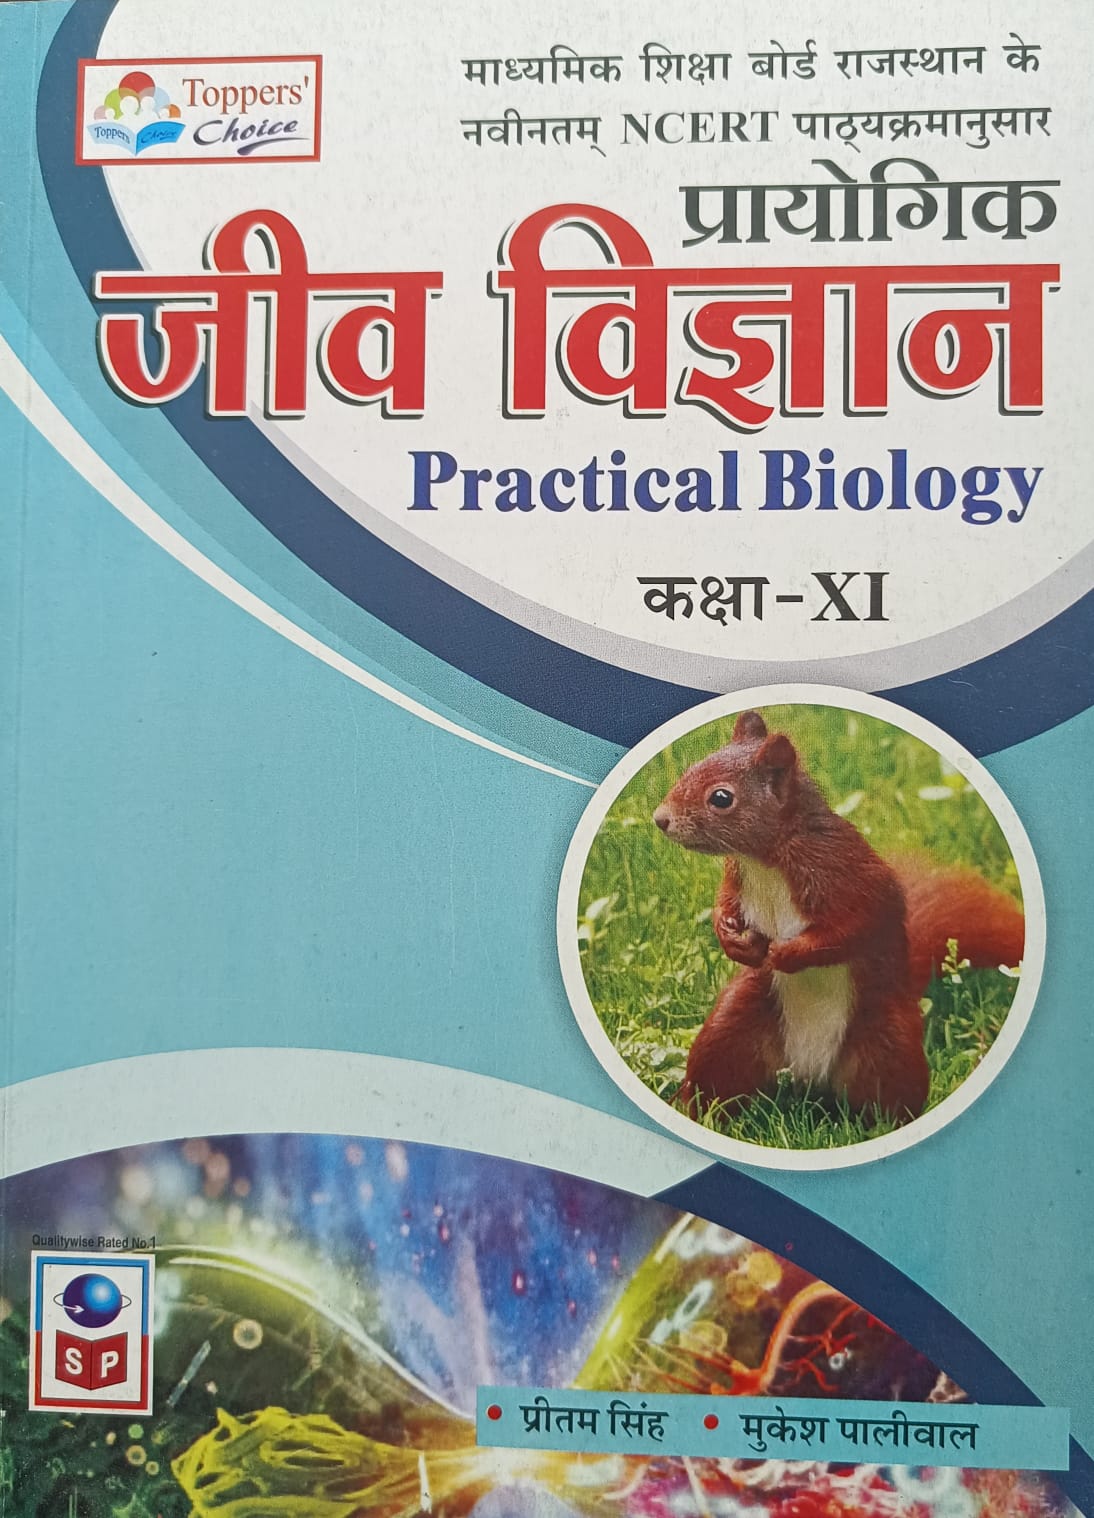 research book in hindi pdf